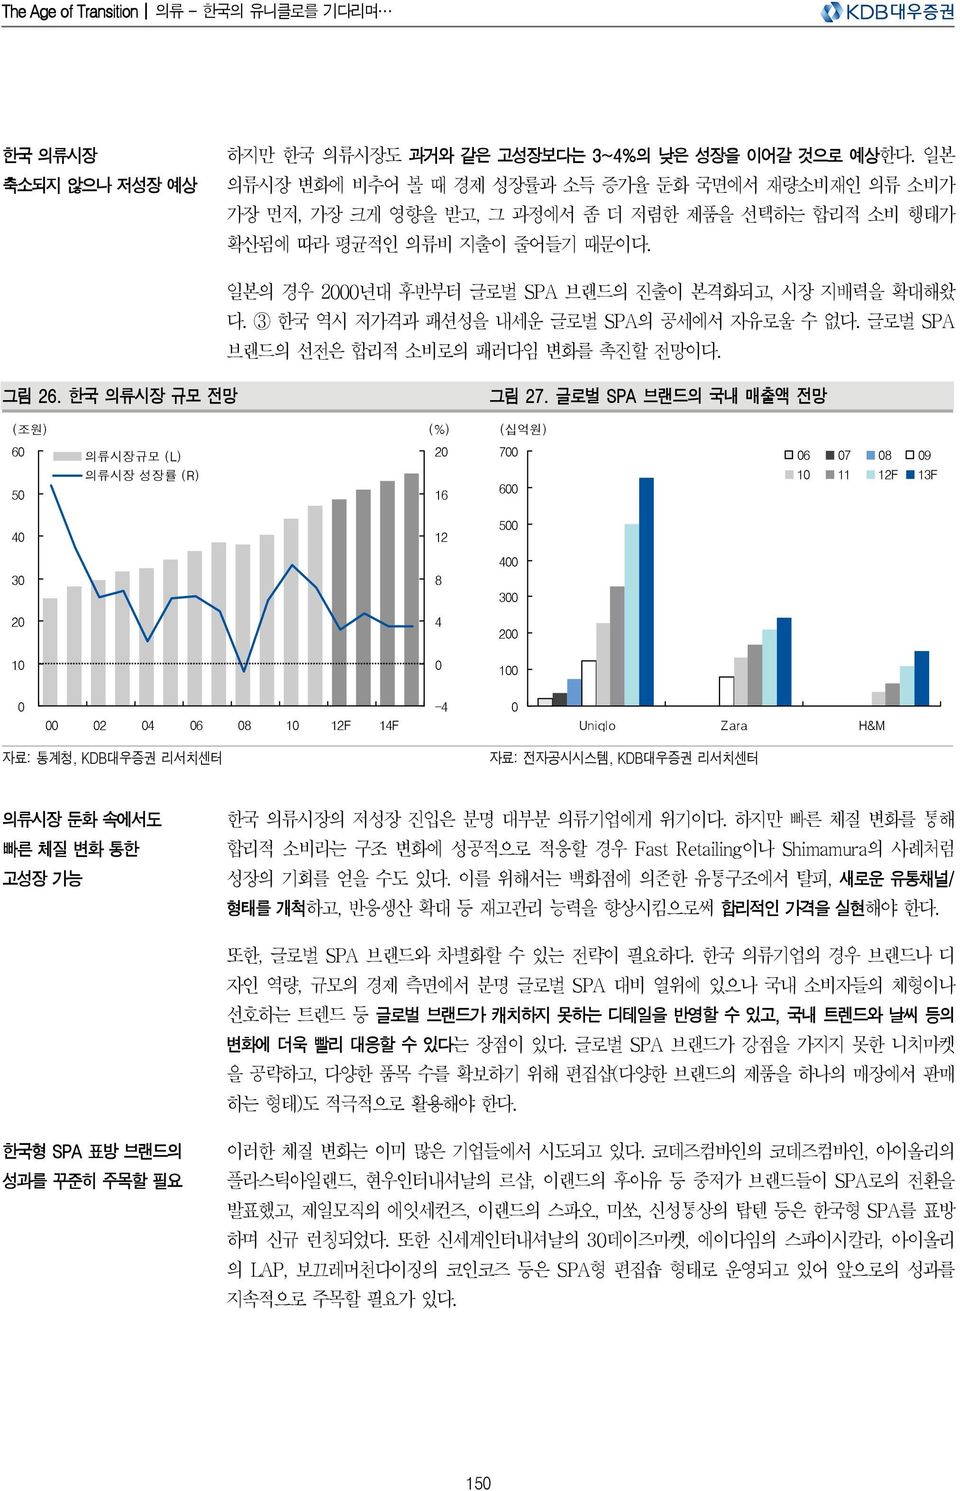 한국 역시 저가격과 패션성을 내세운 글로벌 SPA의 공세에서 자유로울 수 없다. 글로벌 SPA 브랜드의 선전은 합리적 소비로의 패러다임 변화를 촉진할 전망이다. 그림 2. 한국 의류시장 규모 전망 그림 27.